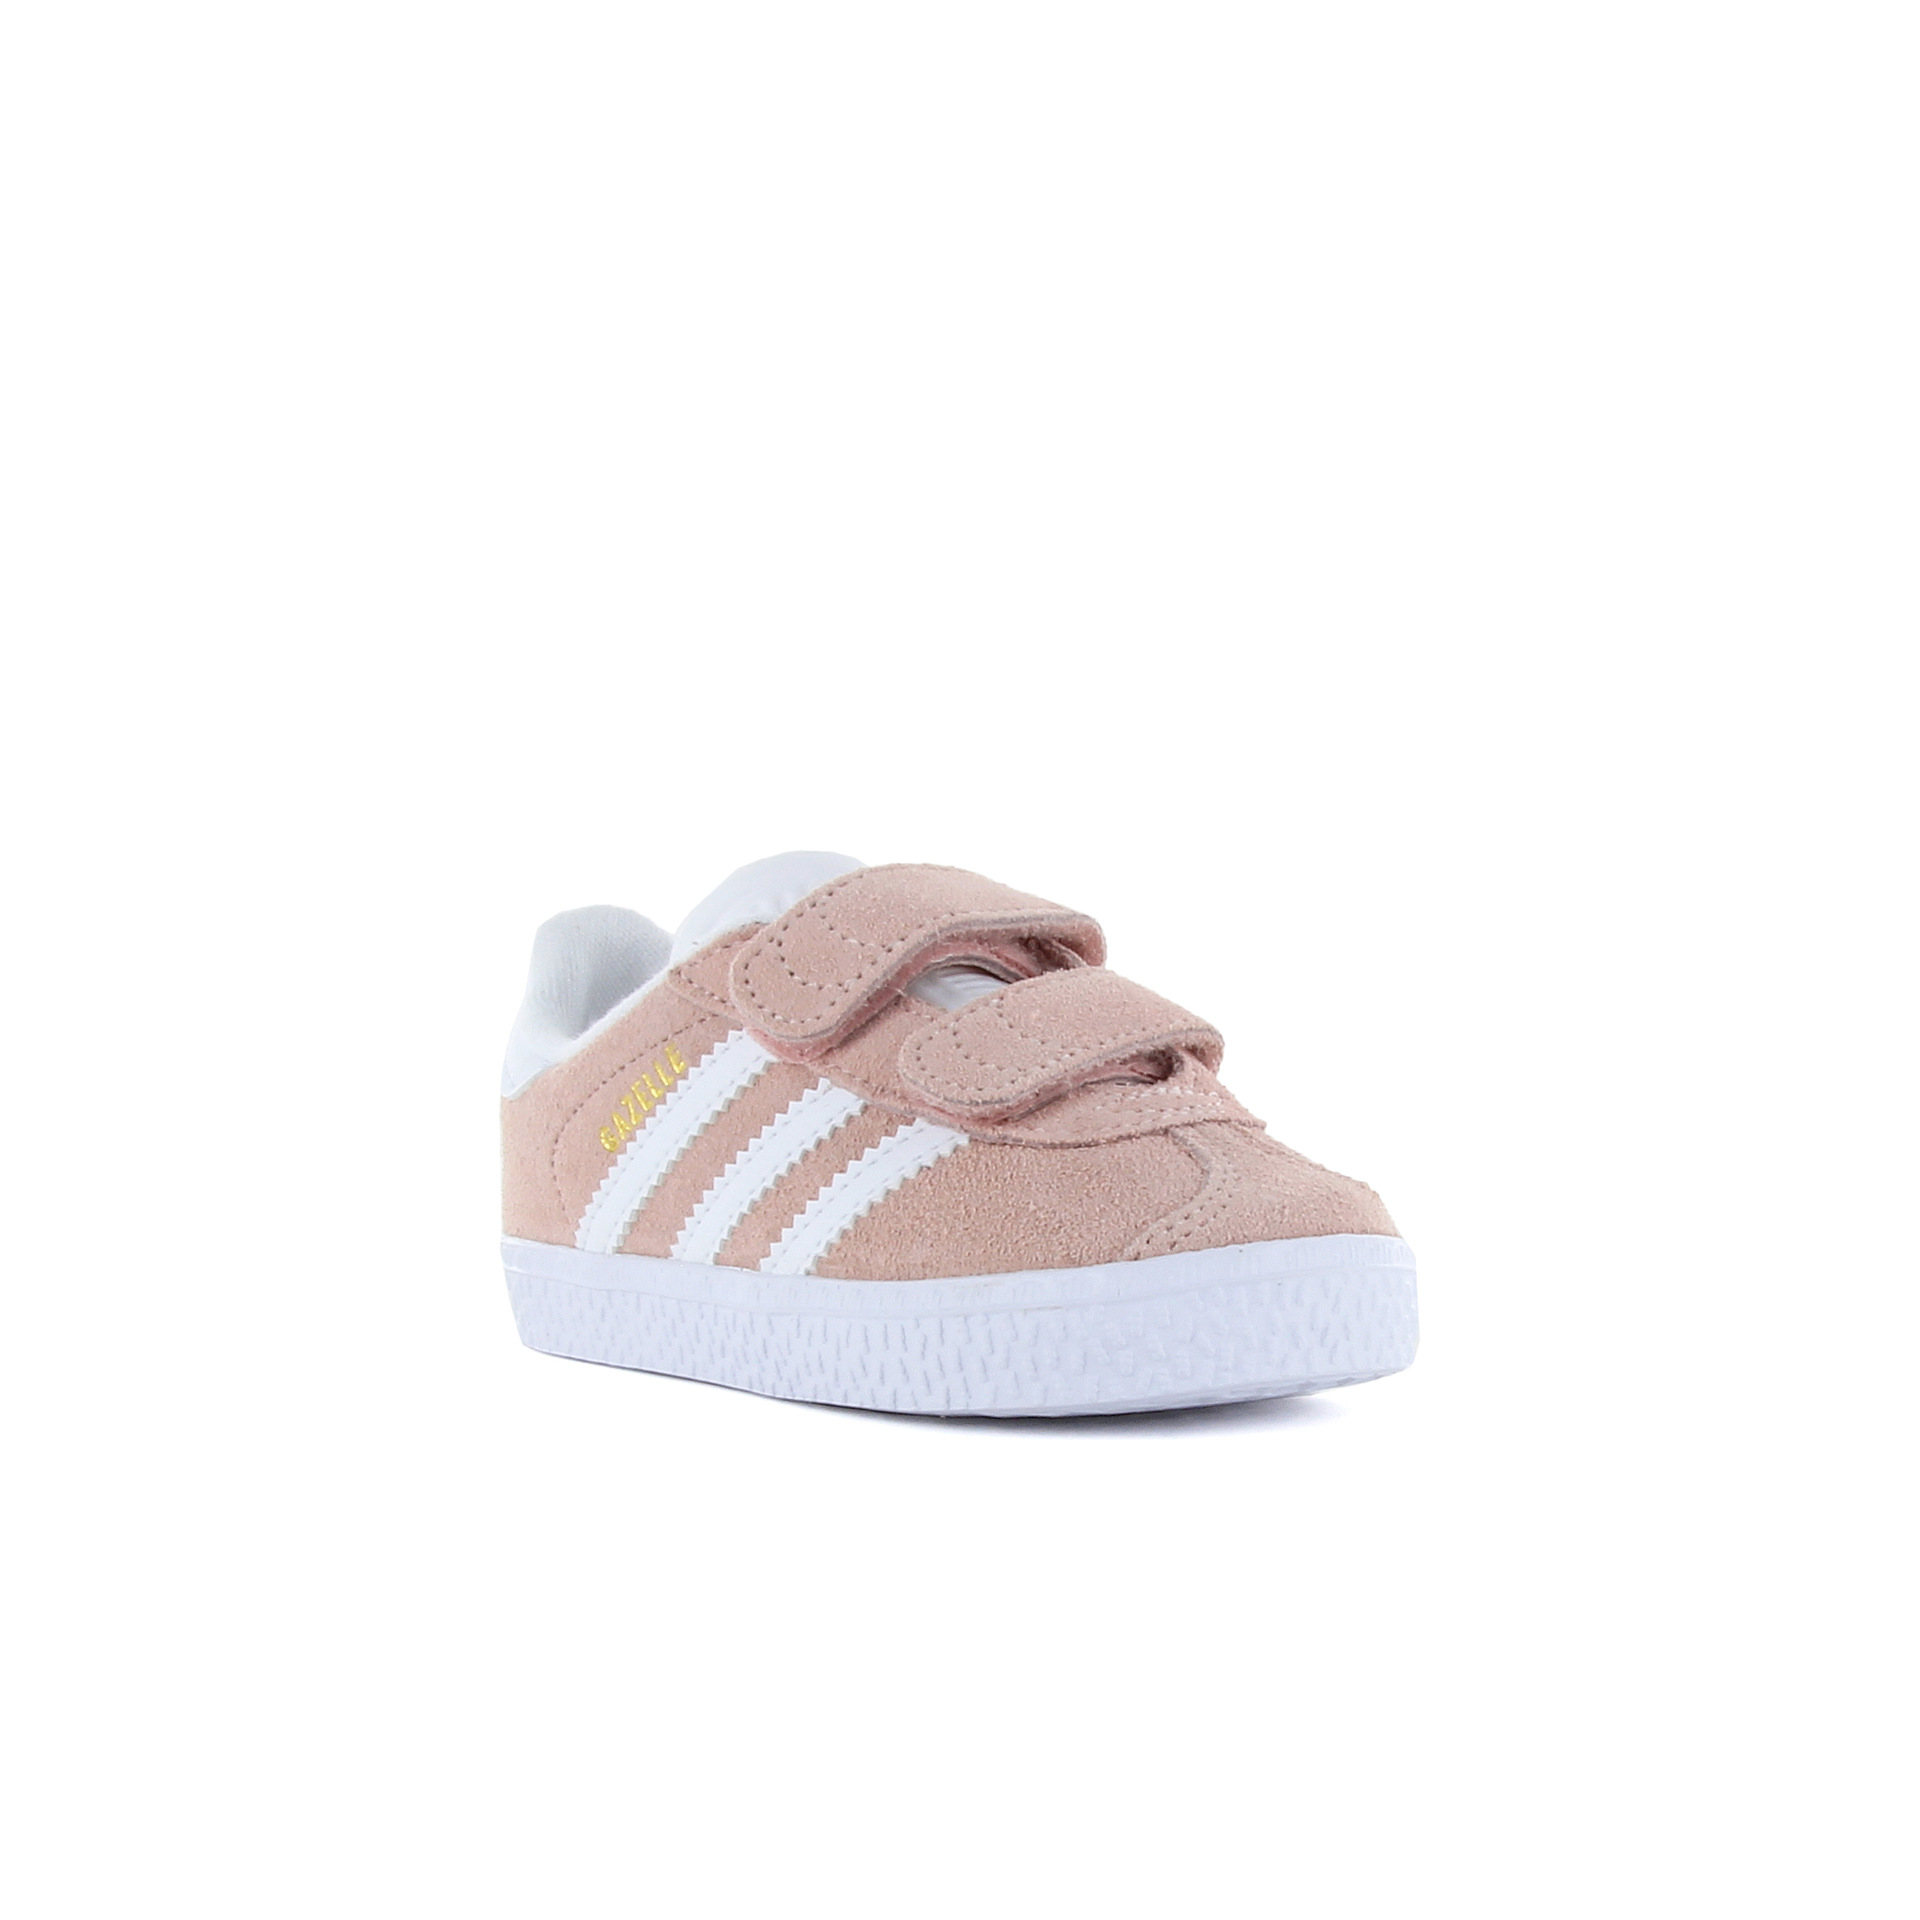 instante Críticamente Tengo una clase de ingles adidas Gazelle Cf I rosa zapatillas bebé tallas 16-27 | Dooers Sneakers